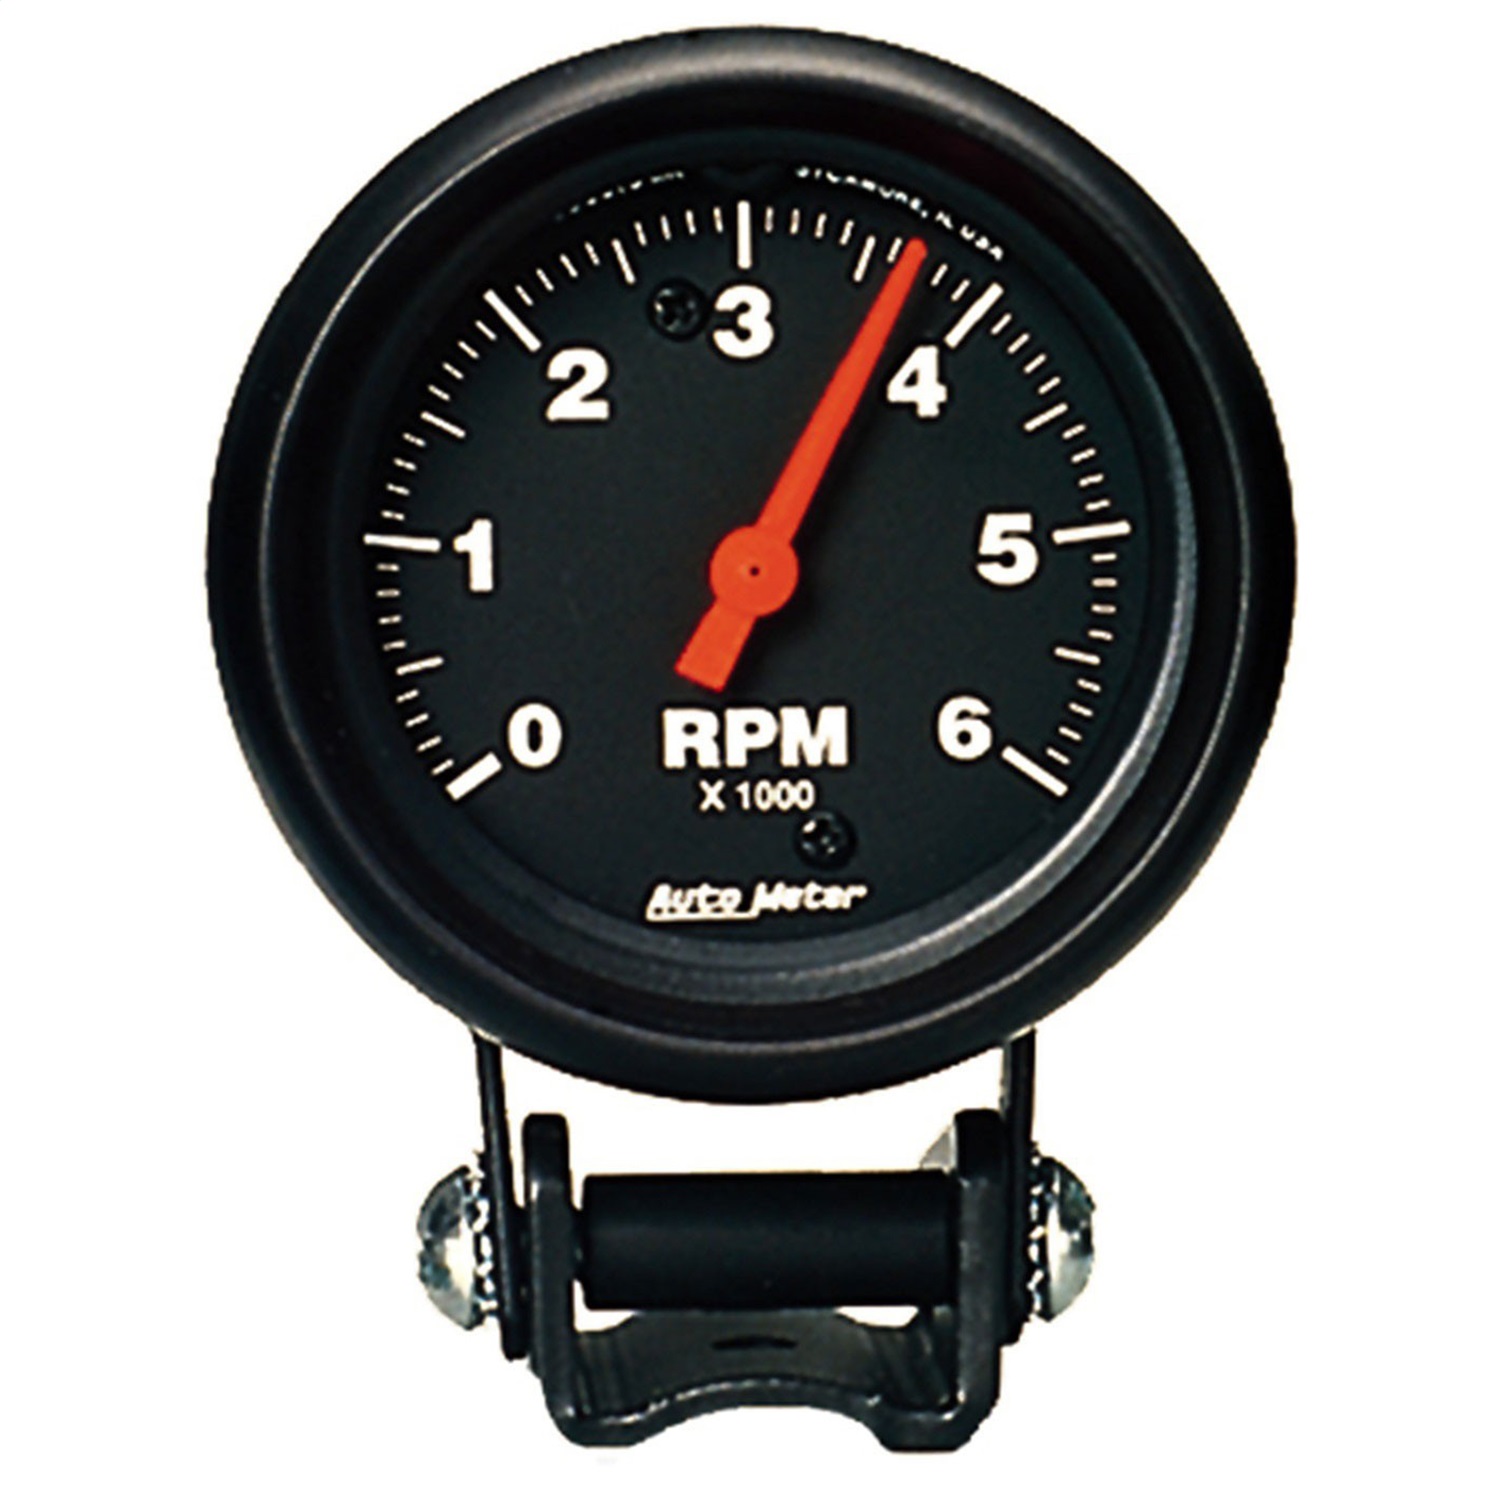 Autometer 2-5/8" TACH, 8,000 RPM